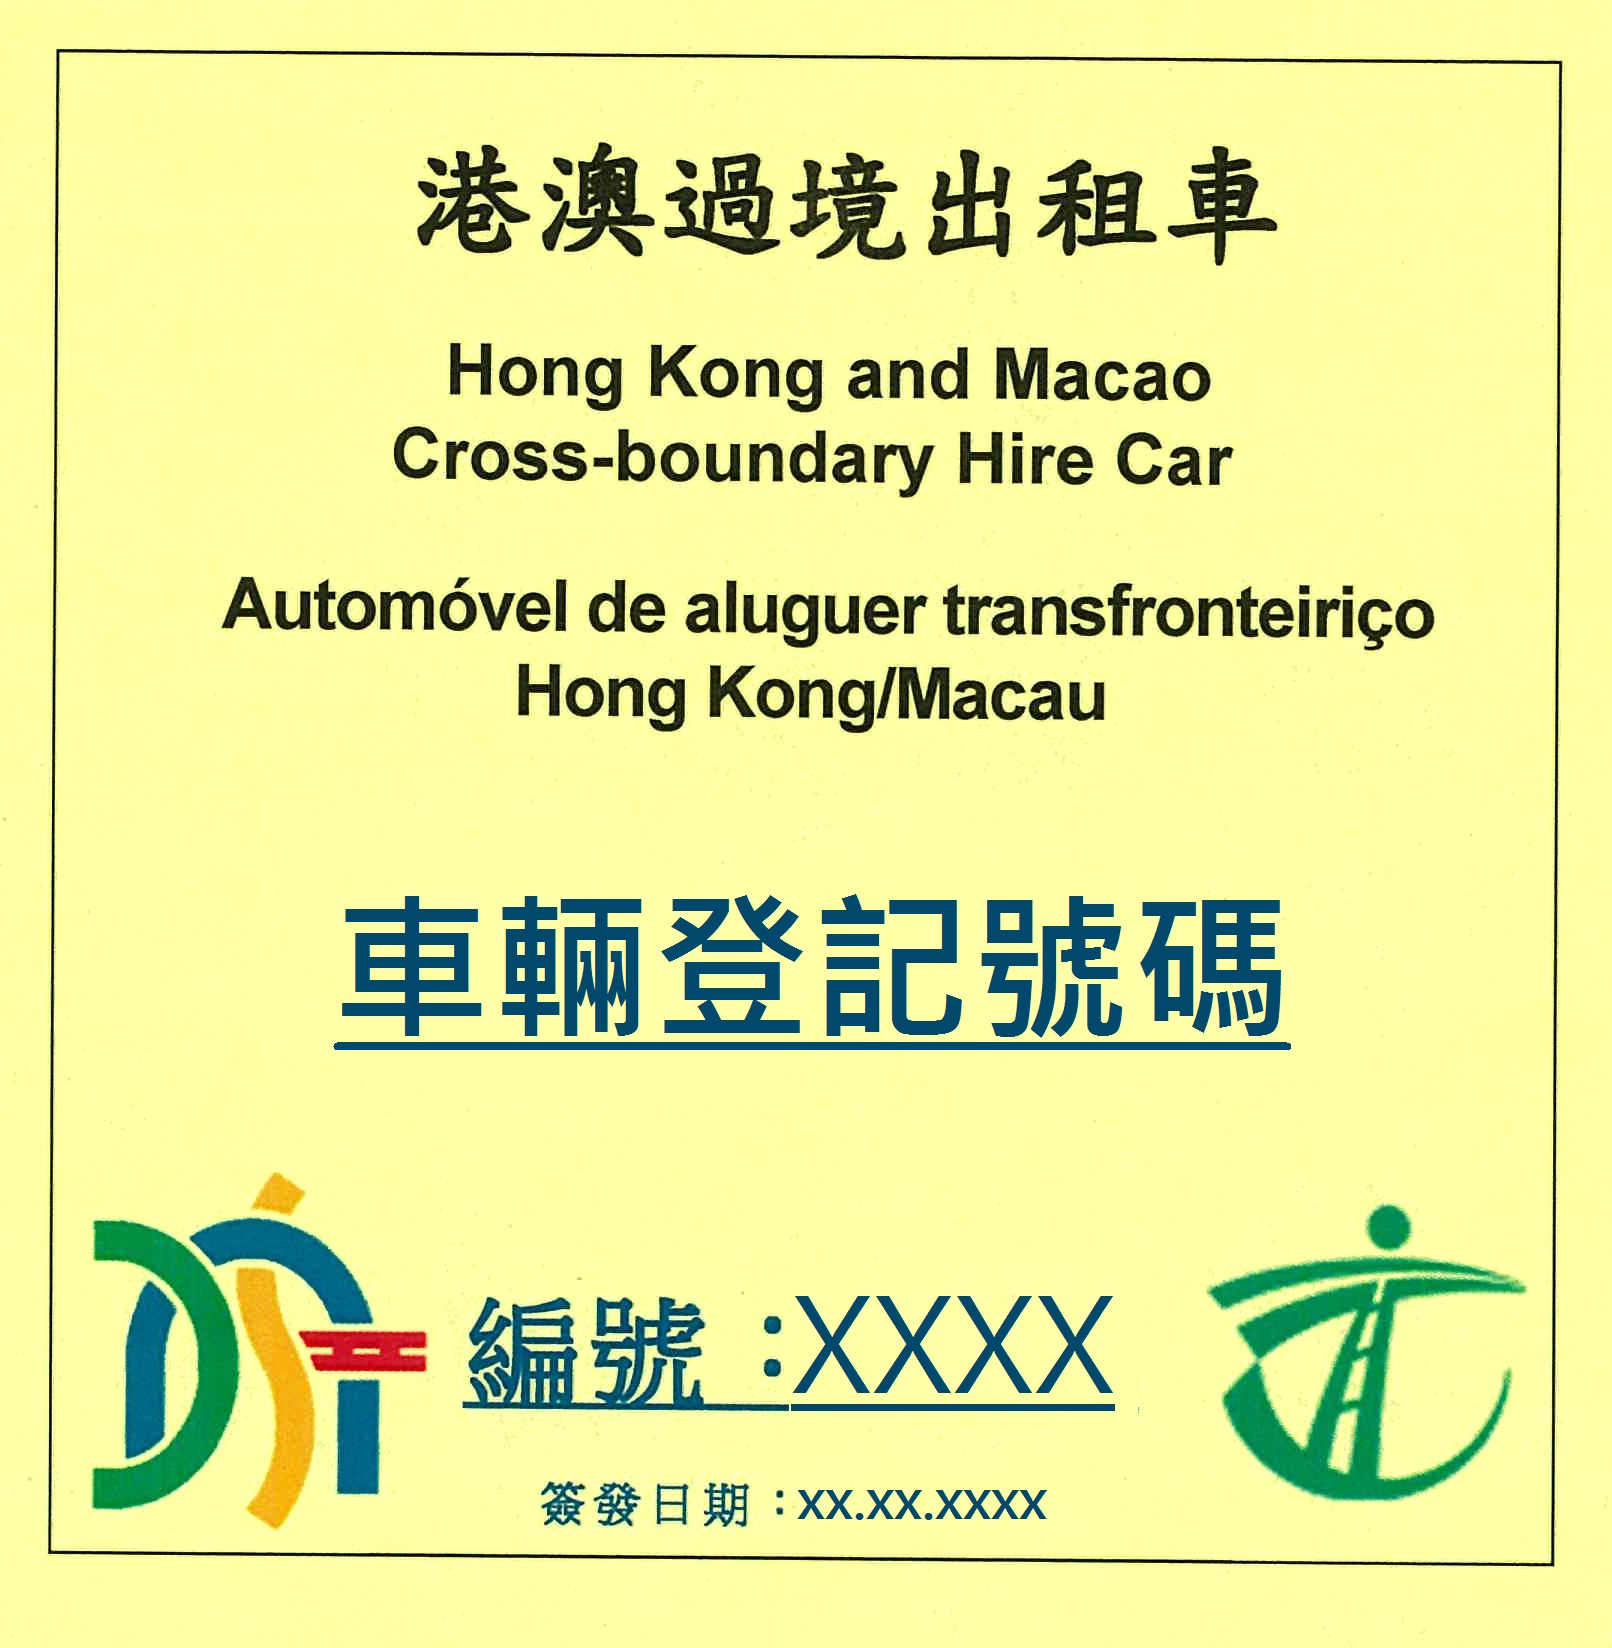 HZMB hire car (HK-Macau qouta)